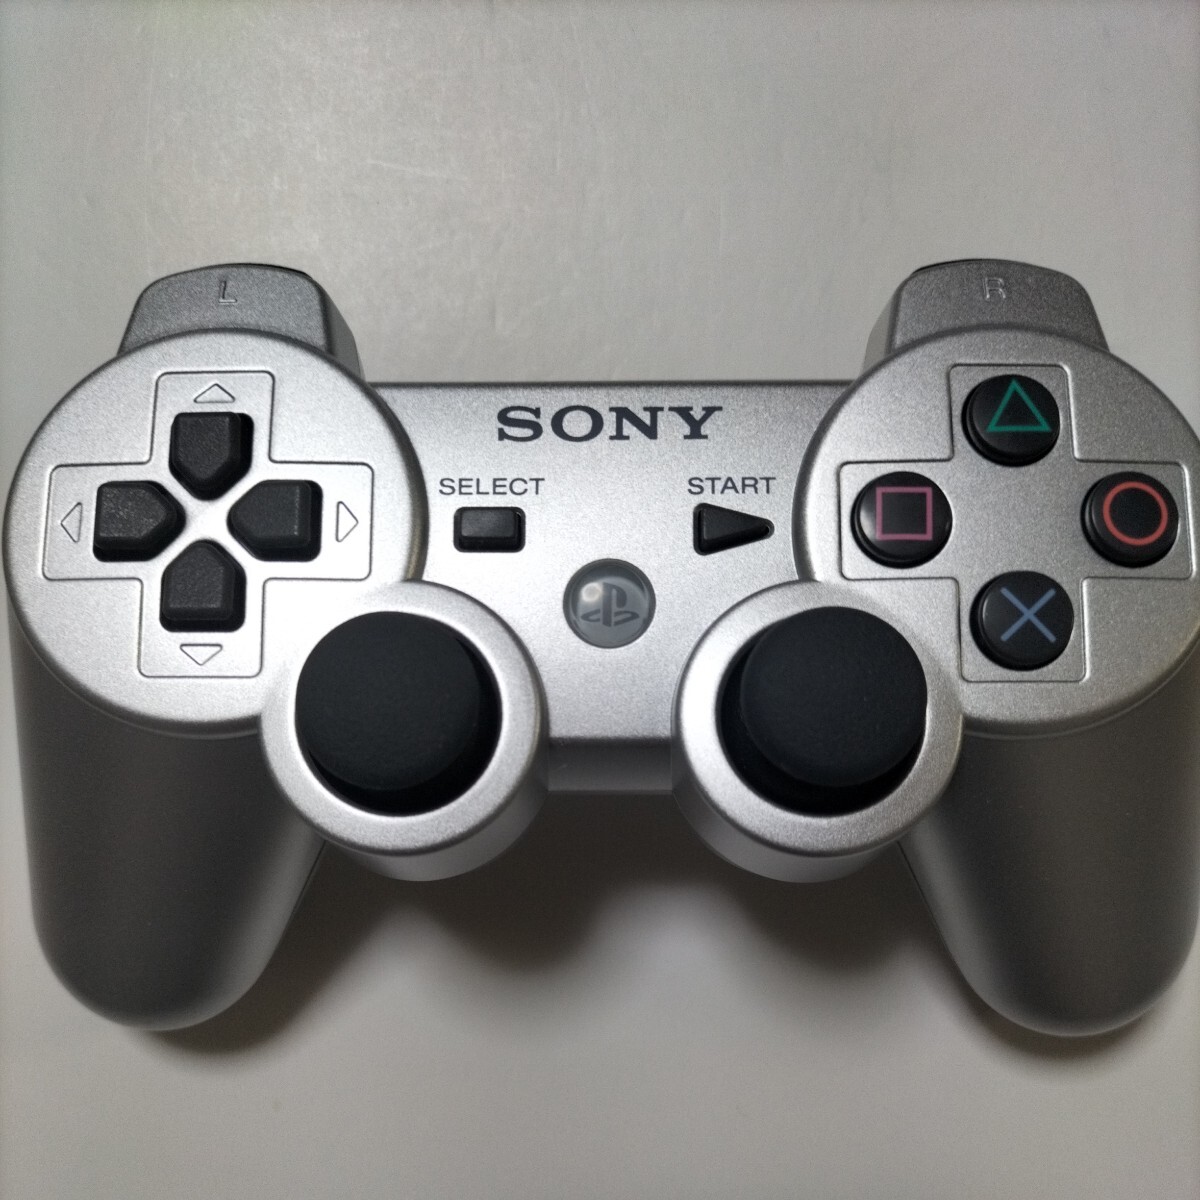 [ разборка чистка ][ ошибка работа меры settled ]PS3 PlayStation 3 DUALSHOCK3 SONY контроллер оригинальный товар рабочее состояние подтверждено техническое обслуживание settled 45